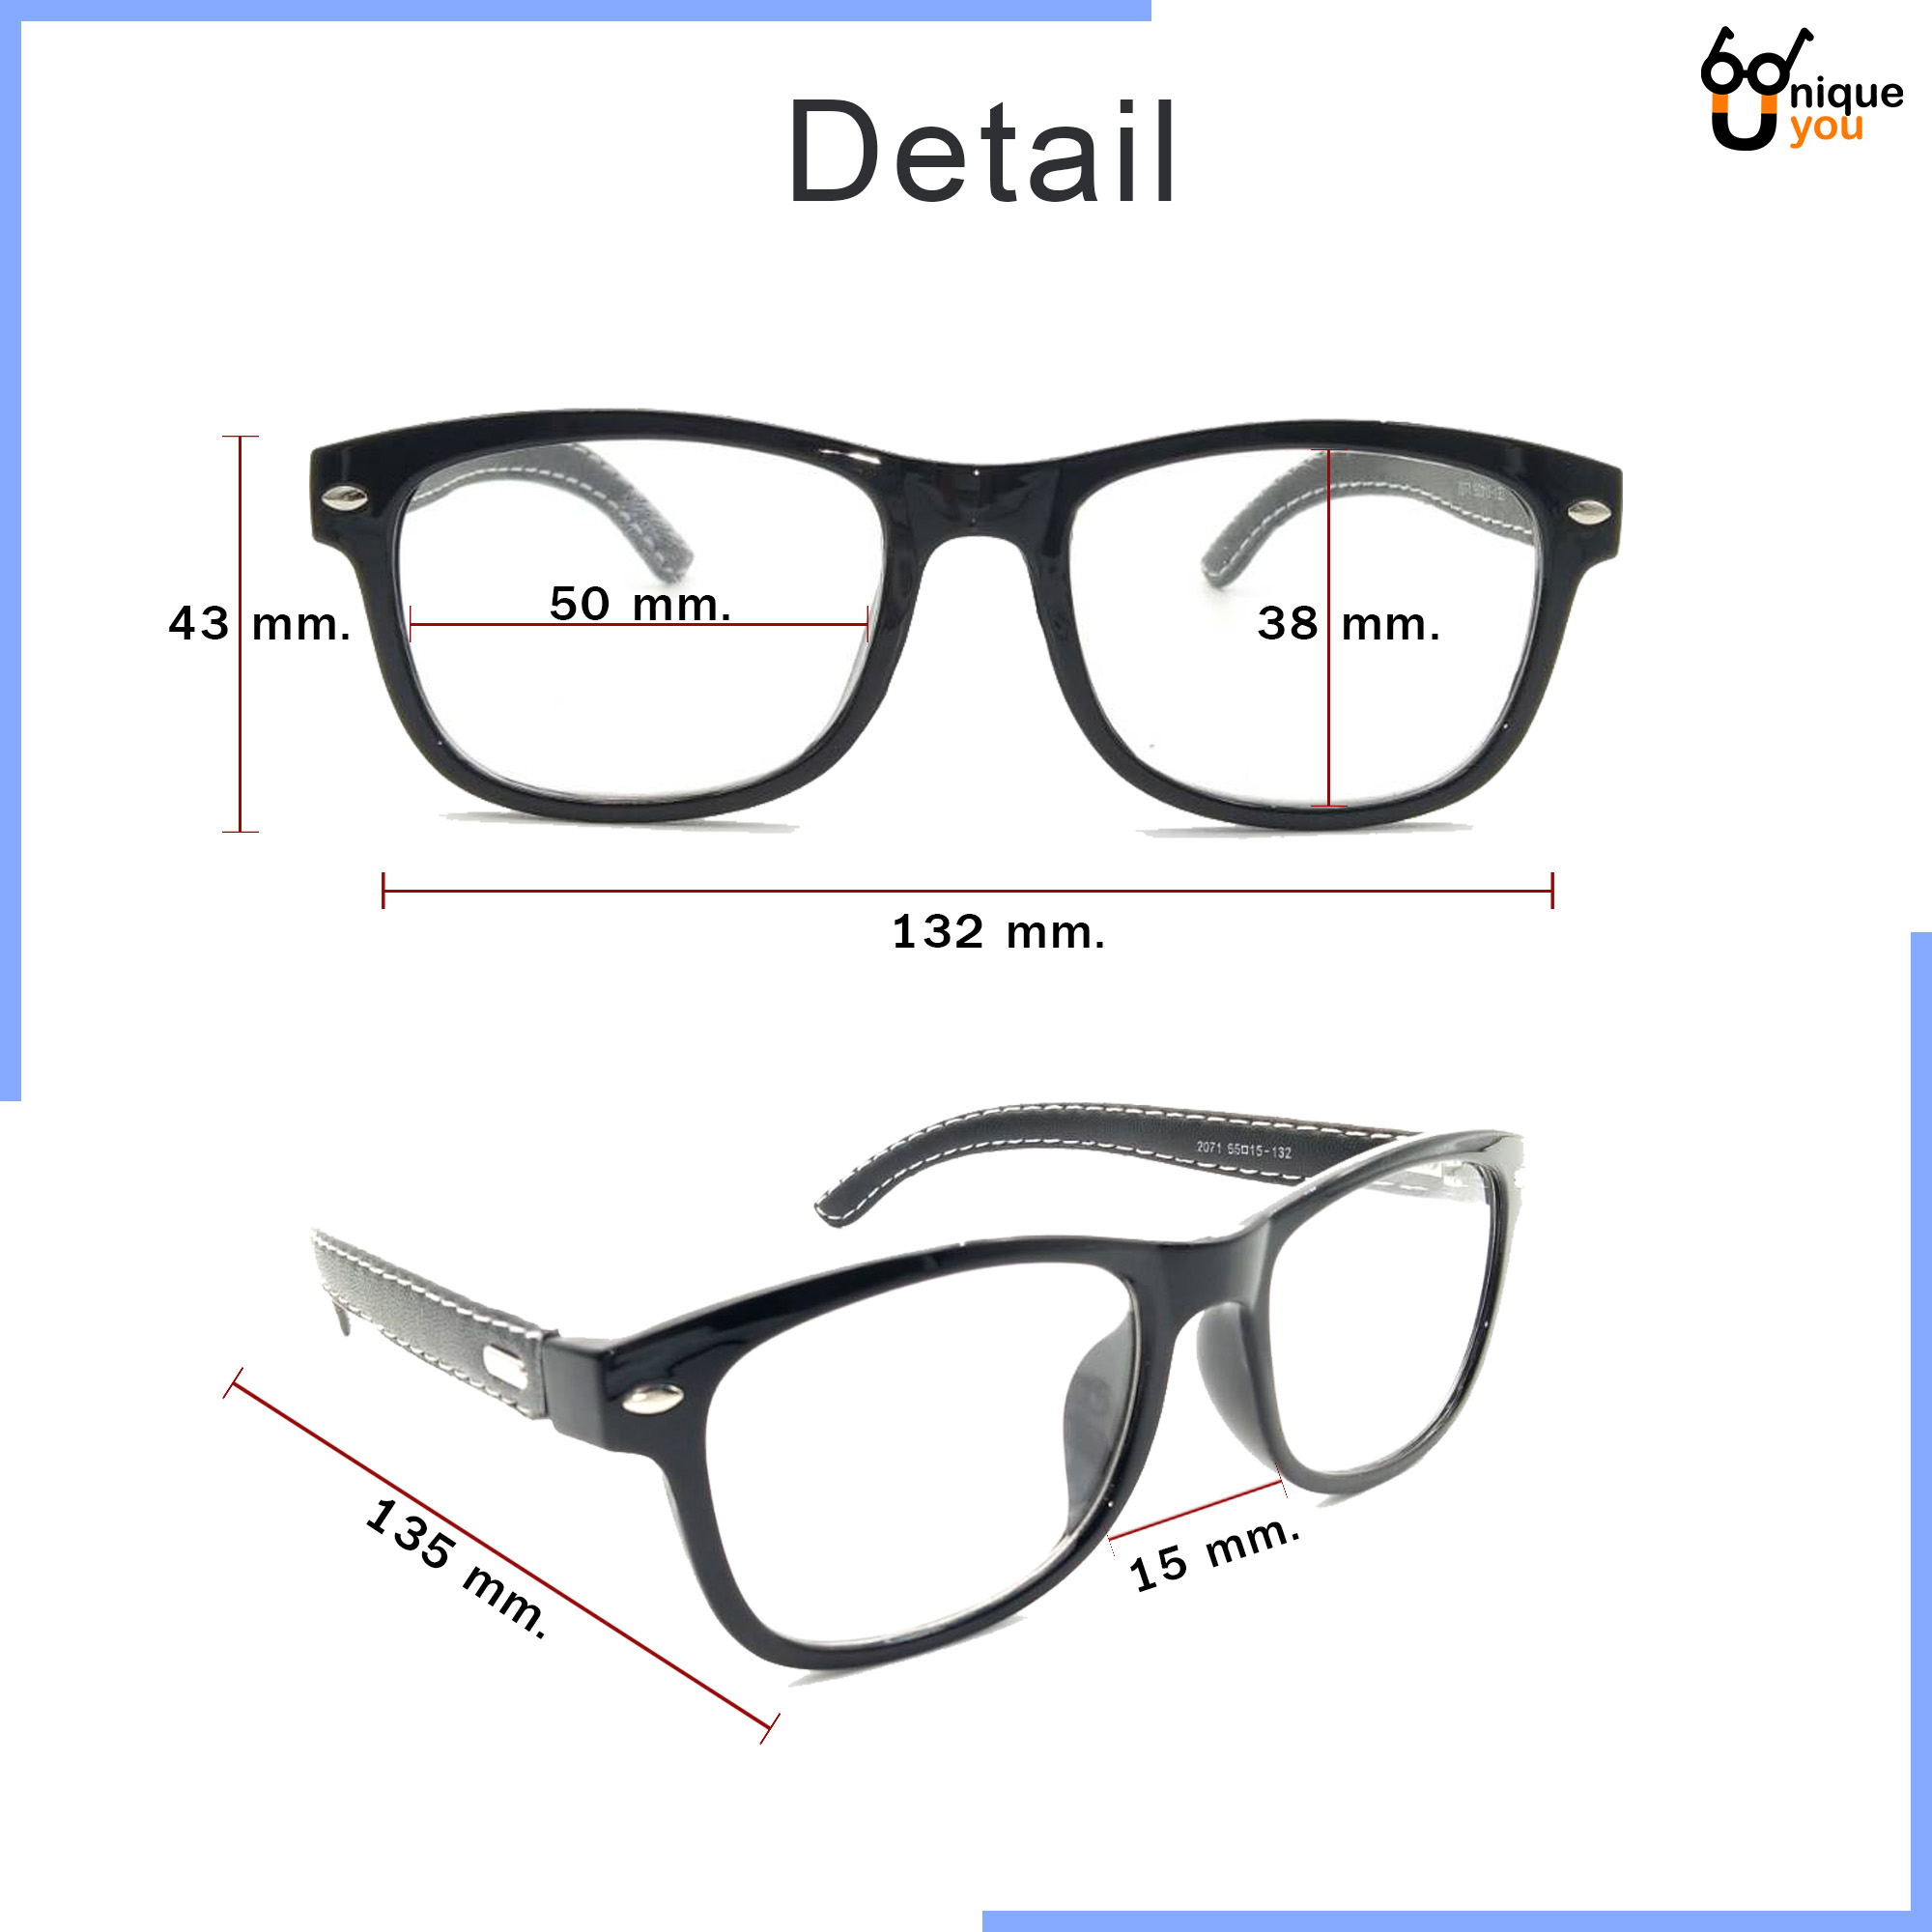 รูปภาพเพิ่มเติมของ Uniq แว่นสายตายาว แว่นสายตาสั้น ขาหนังPU กรอบแว่นหนังPU แว่นสายตา+กรอบแว่นตา แว่นสายตายาว-สั้น